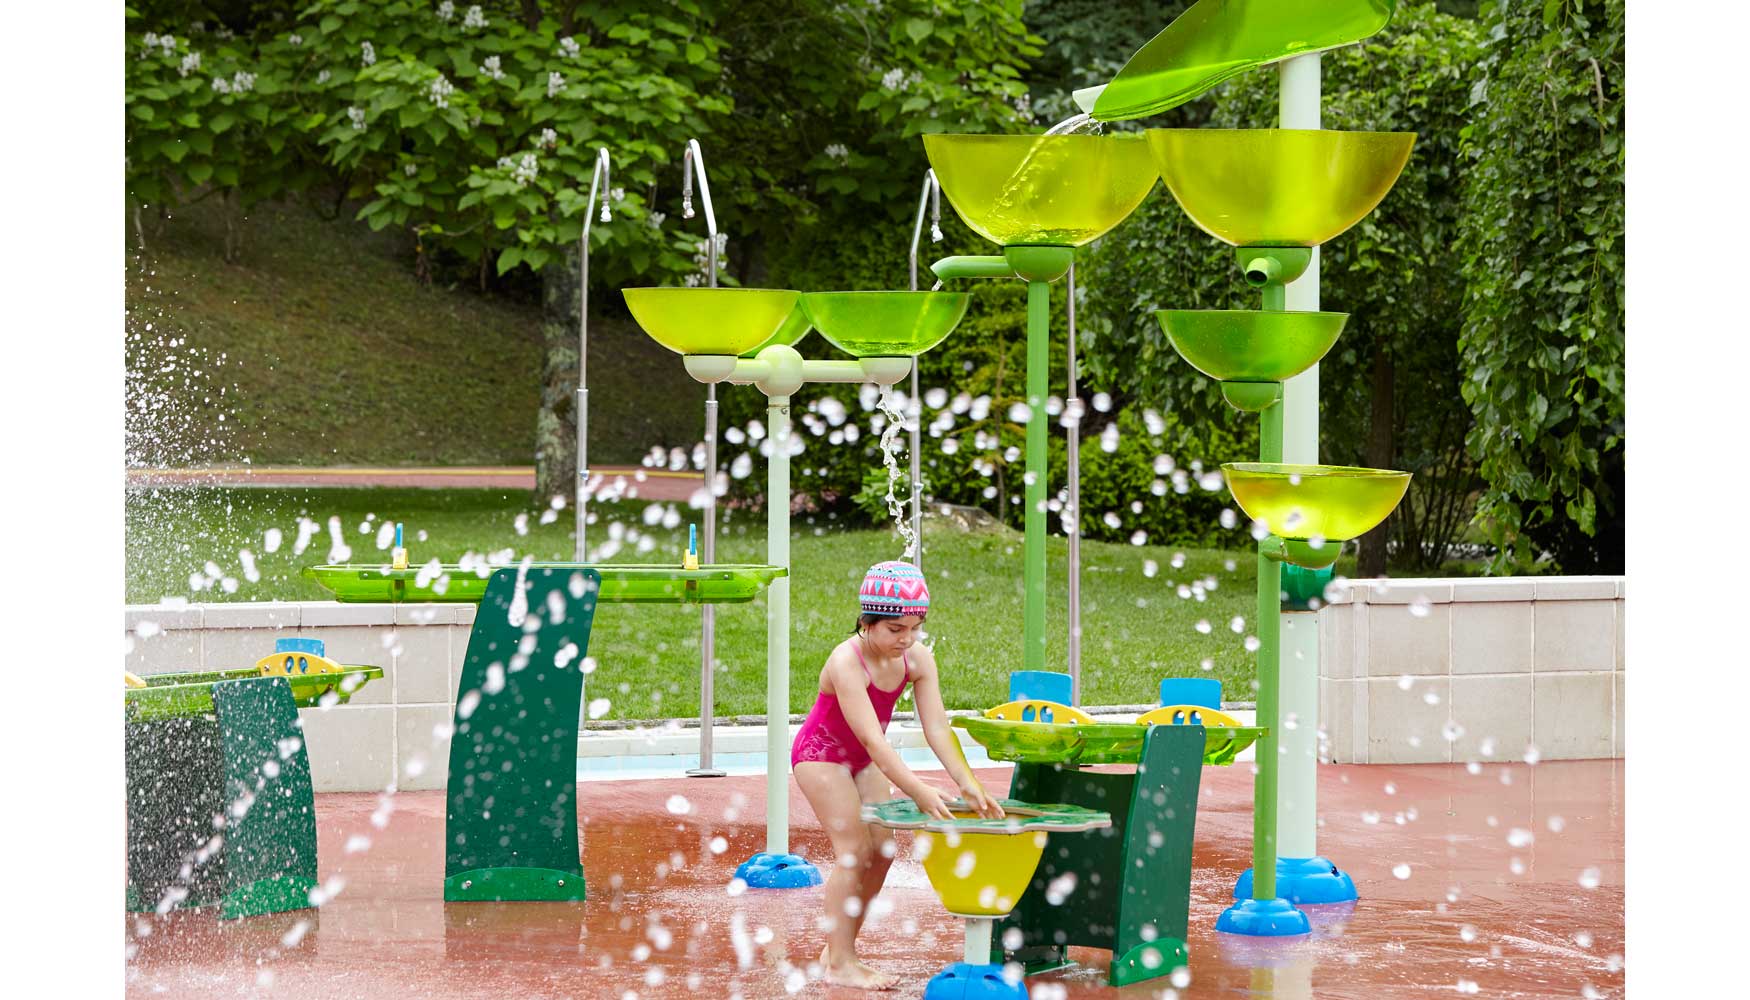 Splashpad aporta una zona de recreo donde la experiencia de juego con el agua es divertida, educativa y refrescante